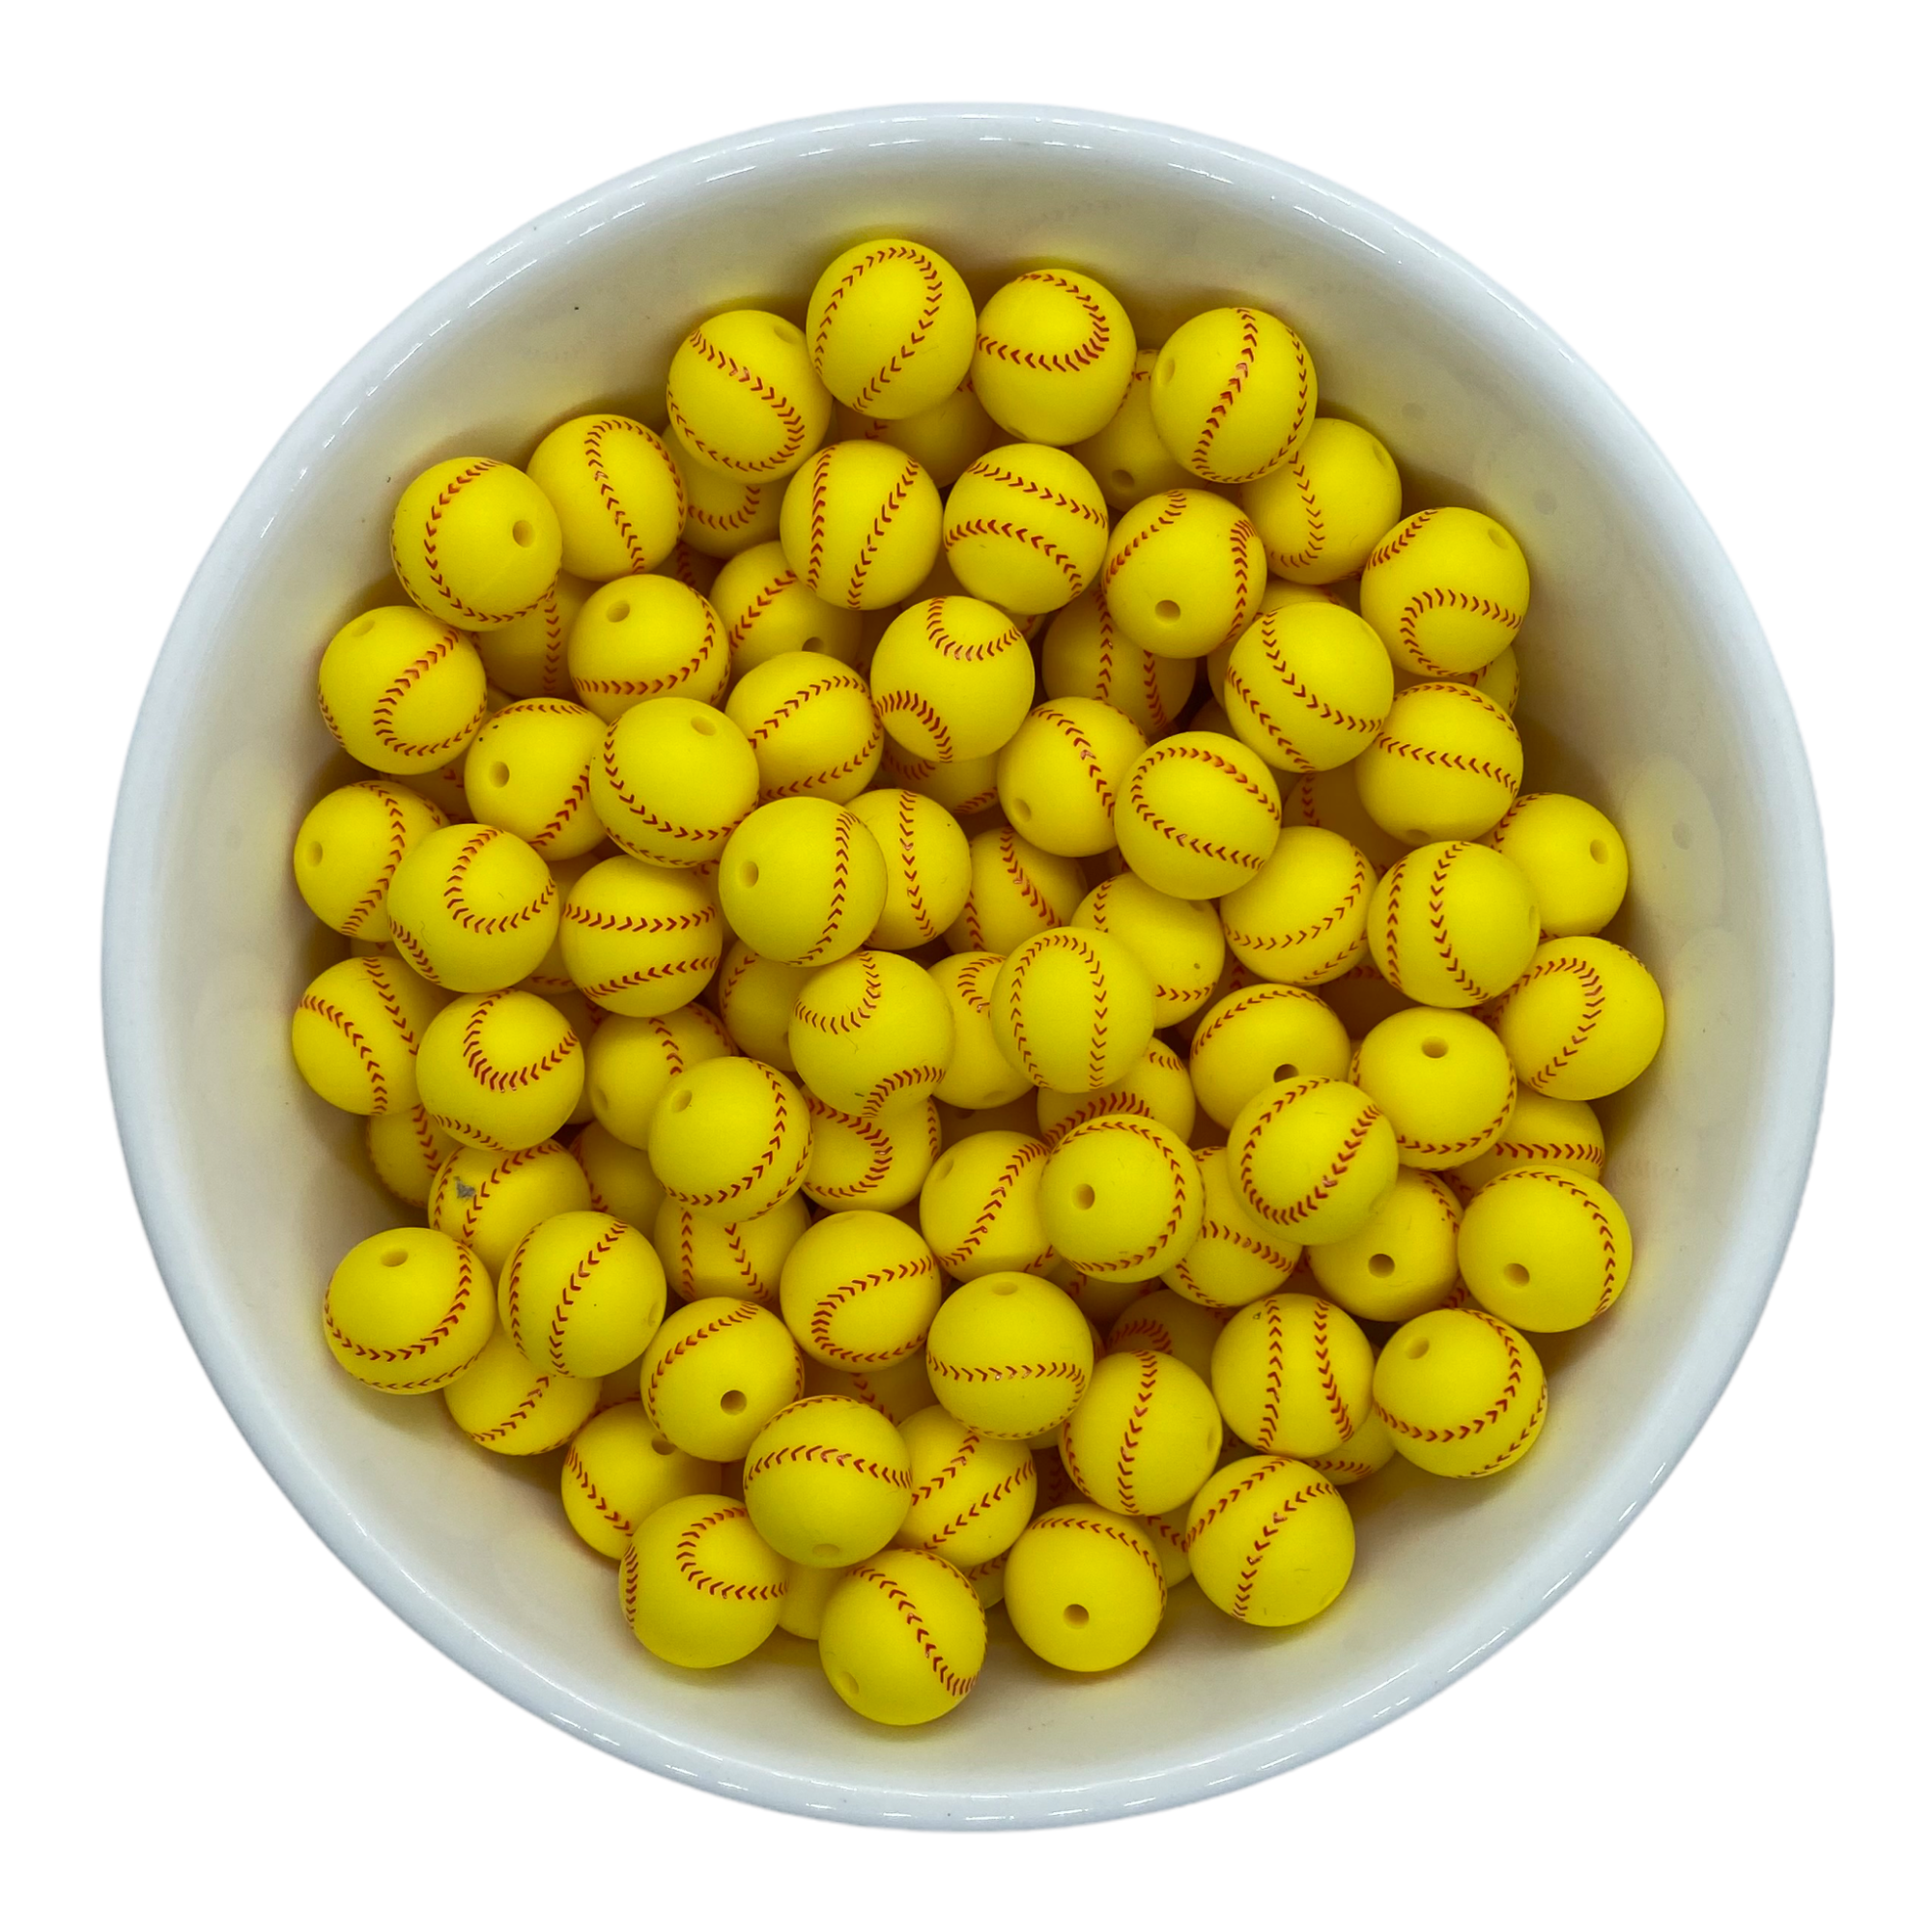 Tennis Ball Yellow 12mm Round Silicone Beads, Yellow Round